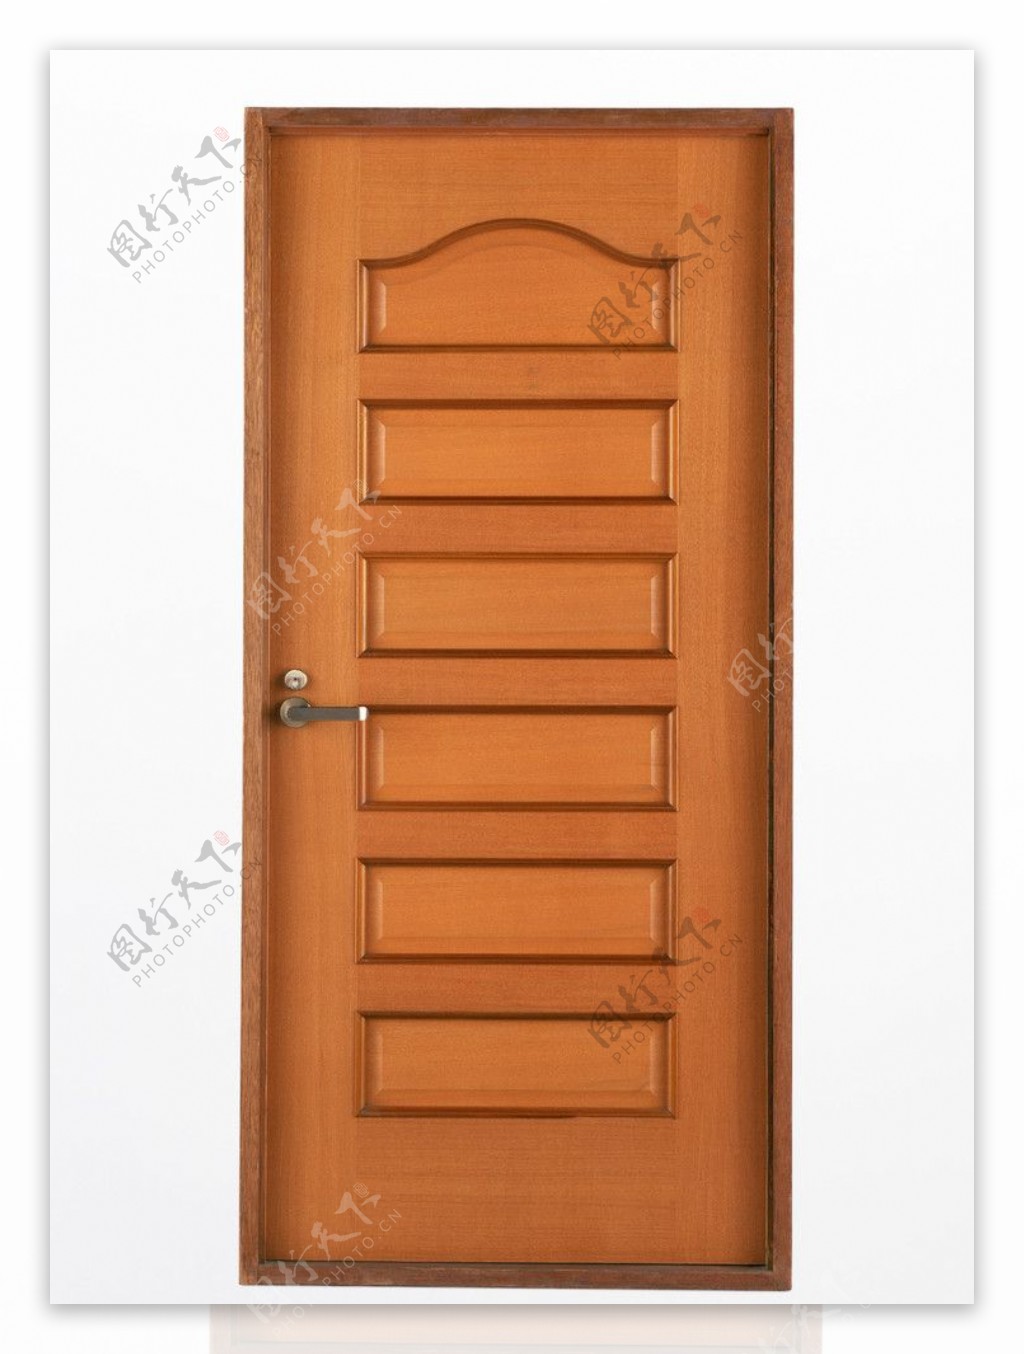 高清木质门窗素材图片